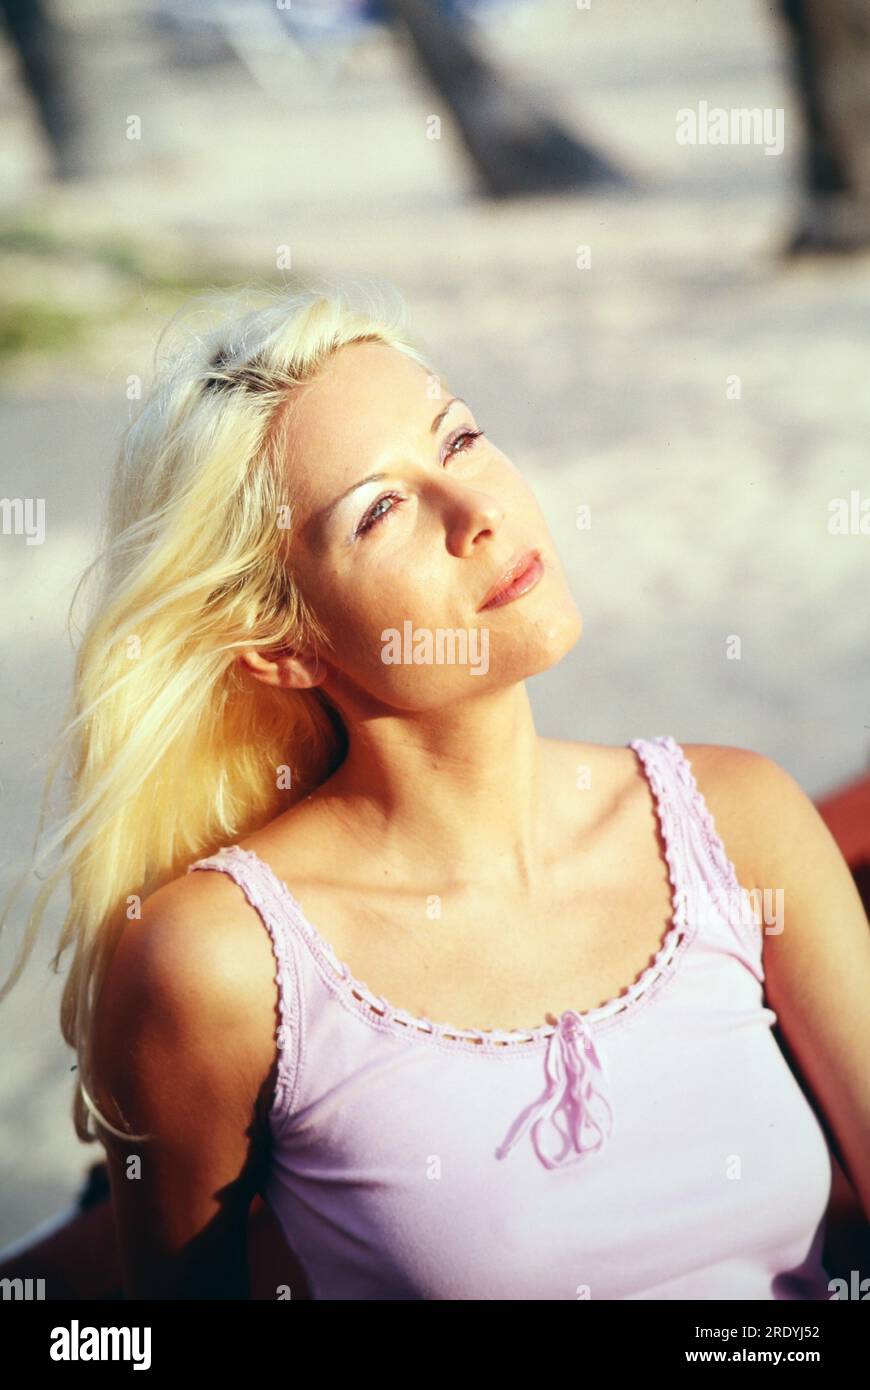 Simone Stelzer, österreichische Schlagersängerin und Schauspielerin, bei einem Promofotoshooting am Strand, Dominikanische Republik 2000. Stockfoto